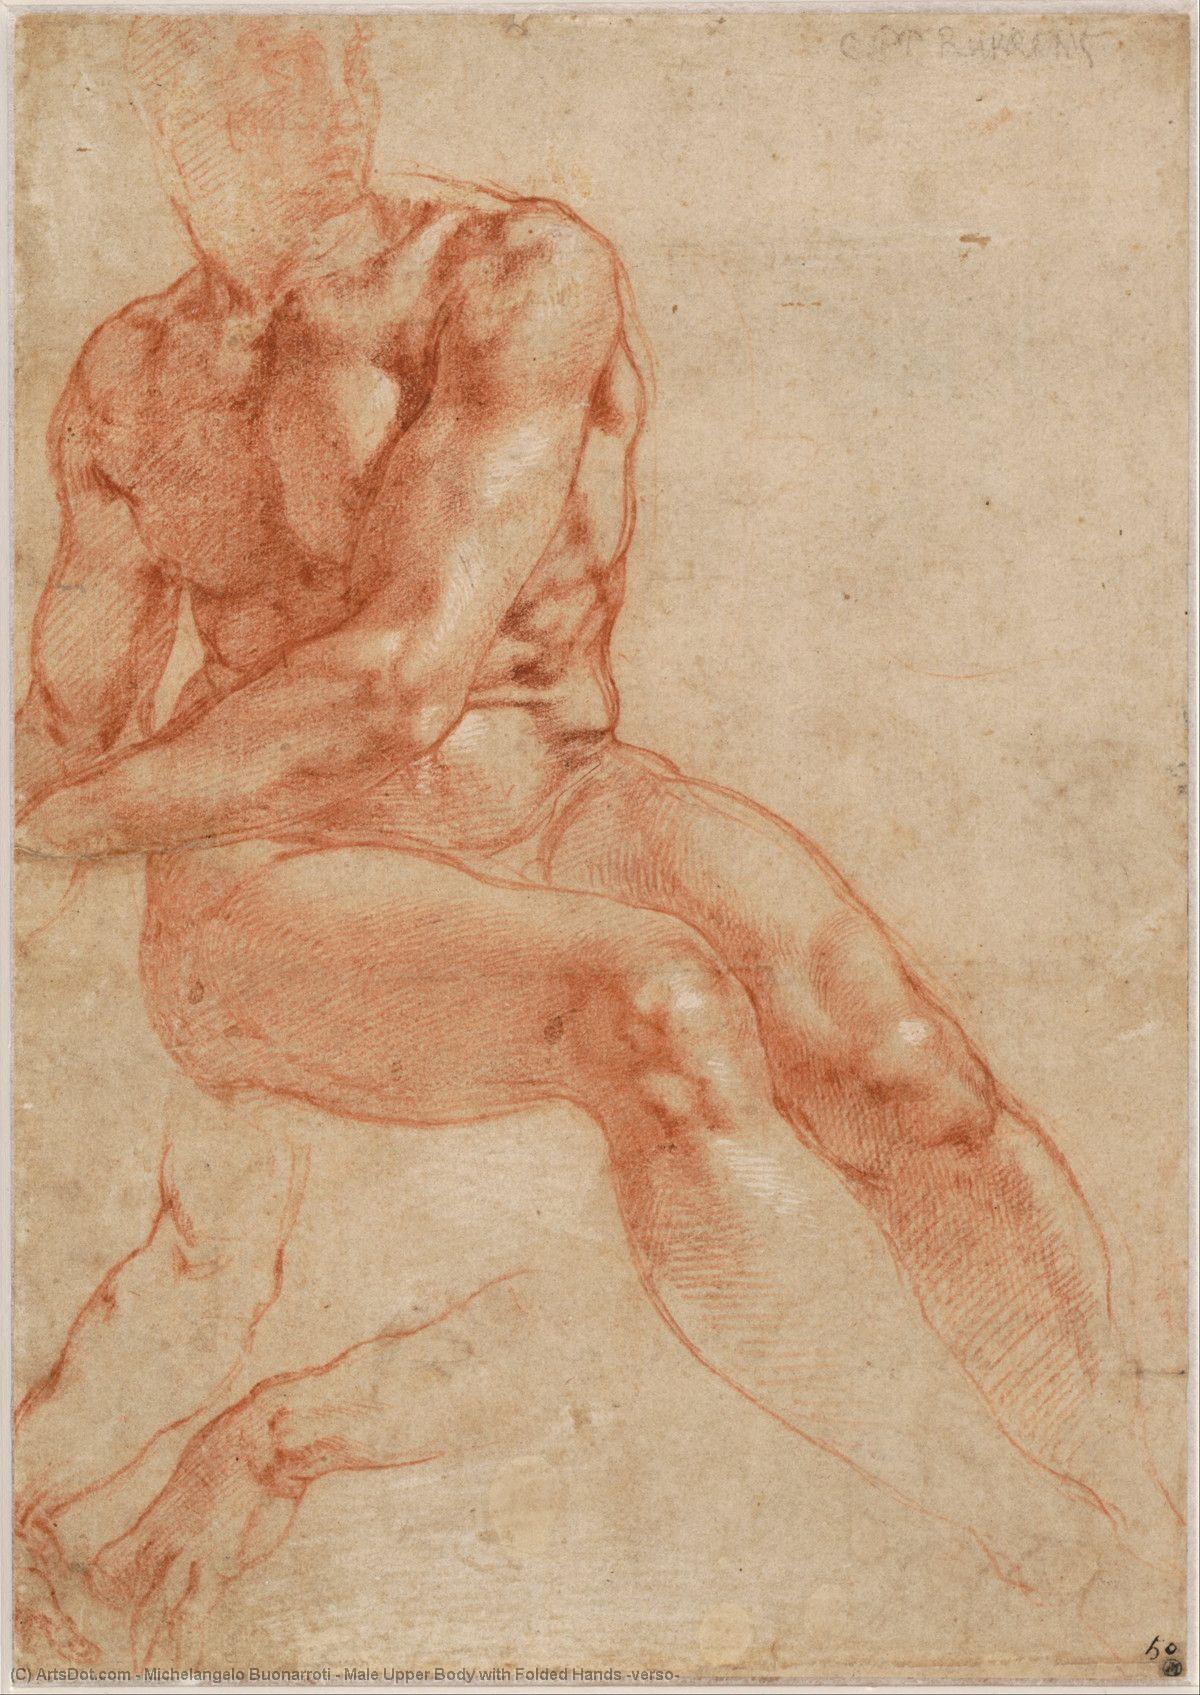 WikiOO.org - Енциклопедия за изящни изкуства - Живопис, Произведения на изкуството Michelangelo Buonarroti - Male Upper Body with Folded Hands (verso)